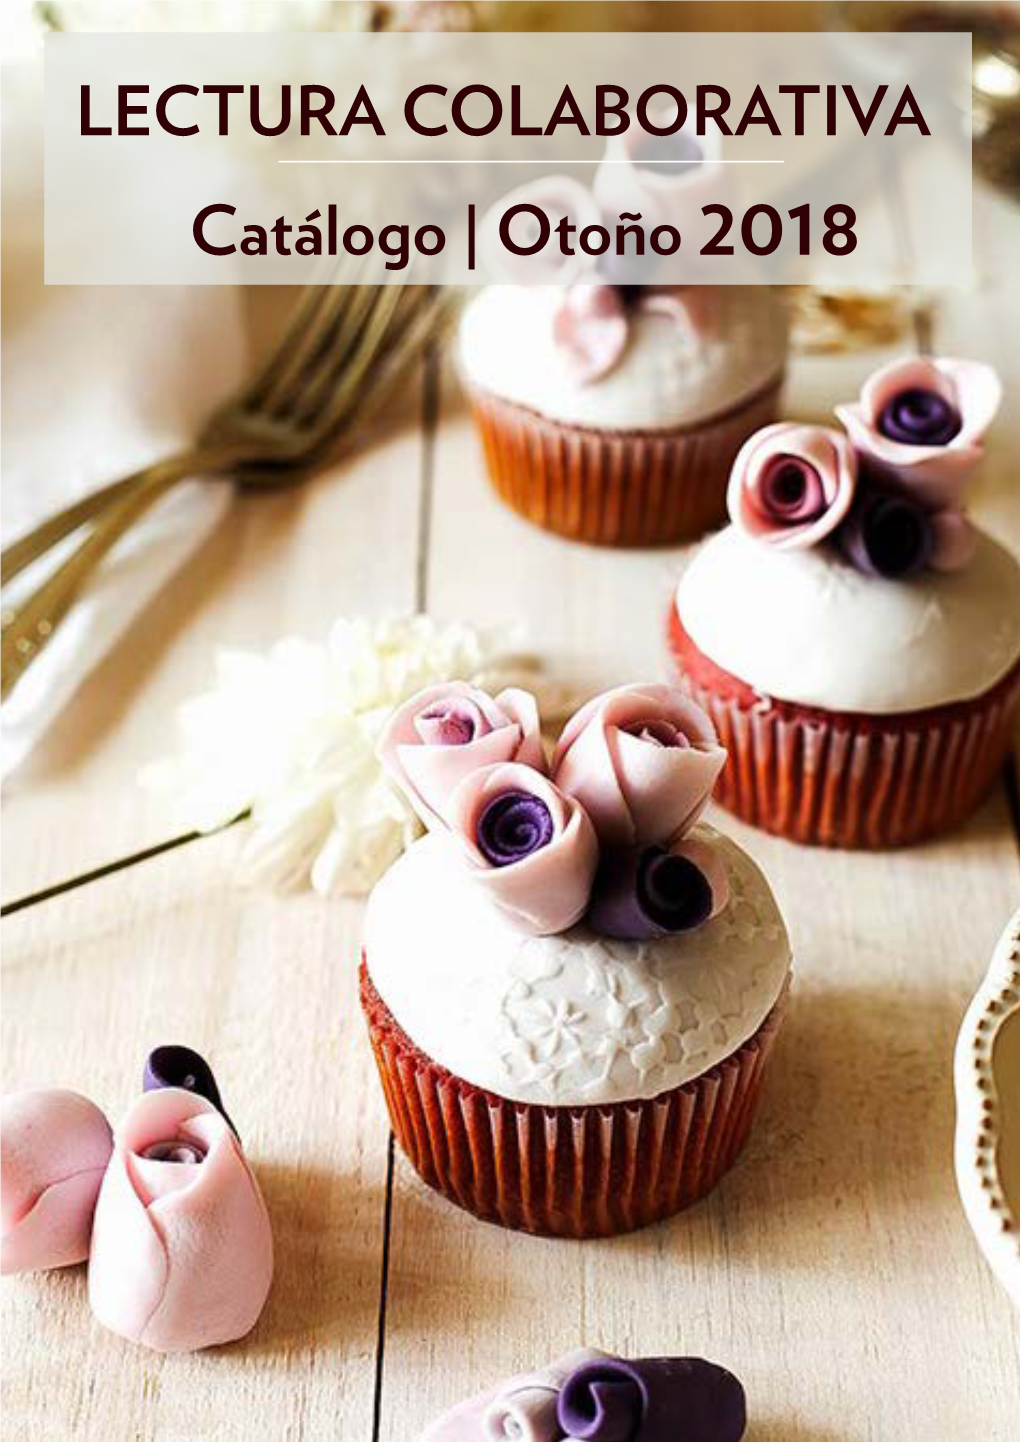 Catálogo | Otoño 2018 LECTURA COLABORATIVA